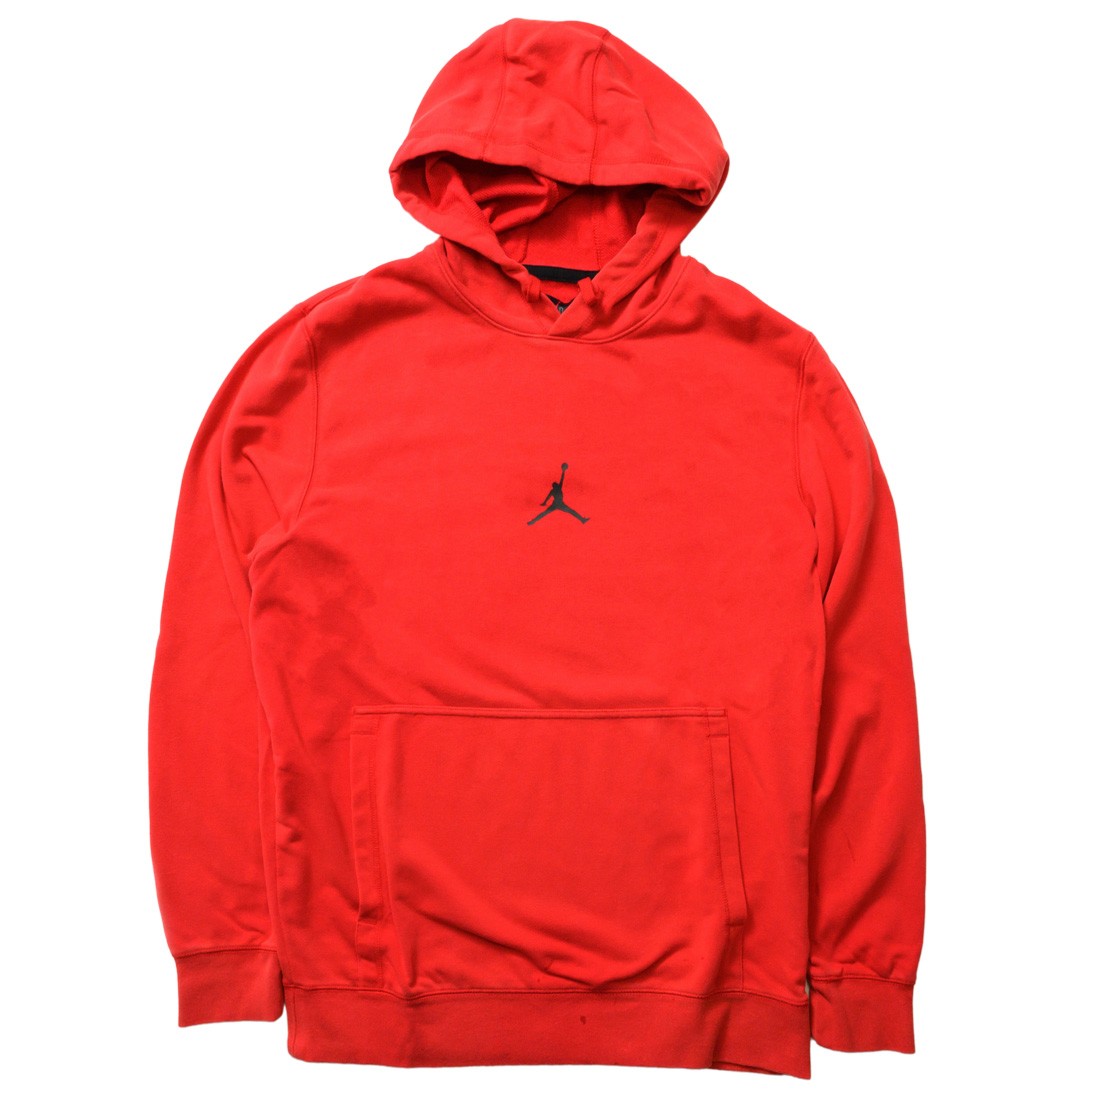 jordan hoodie red and black